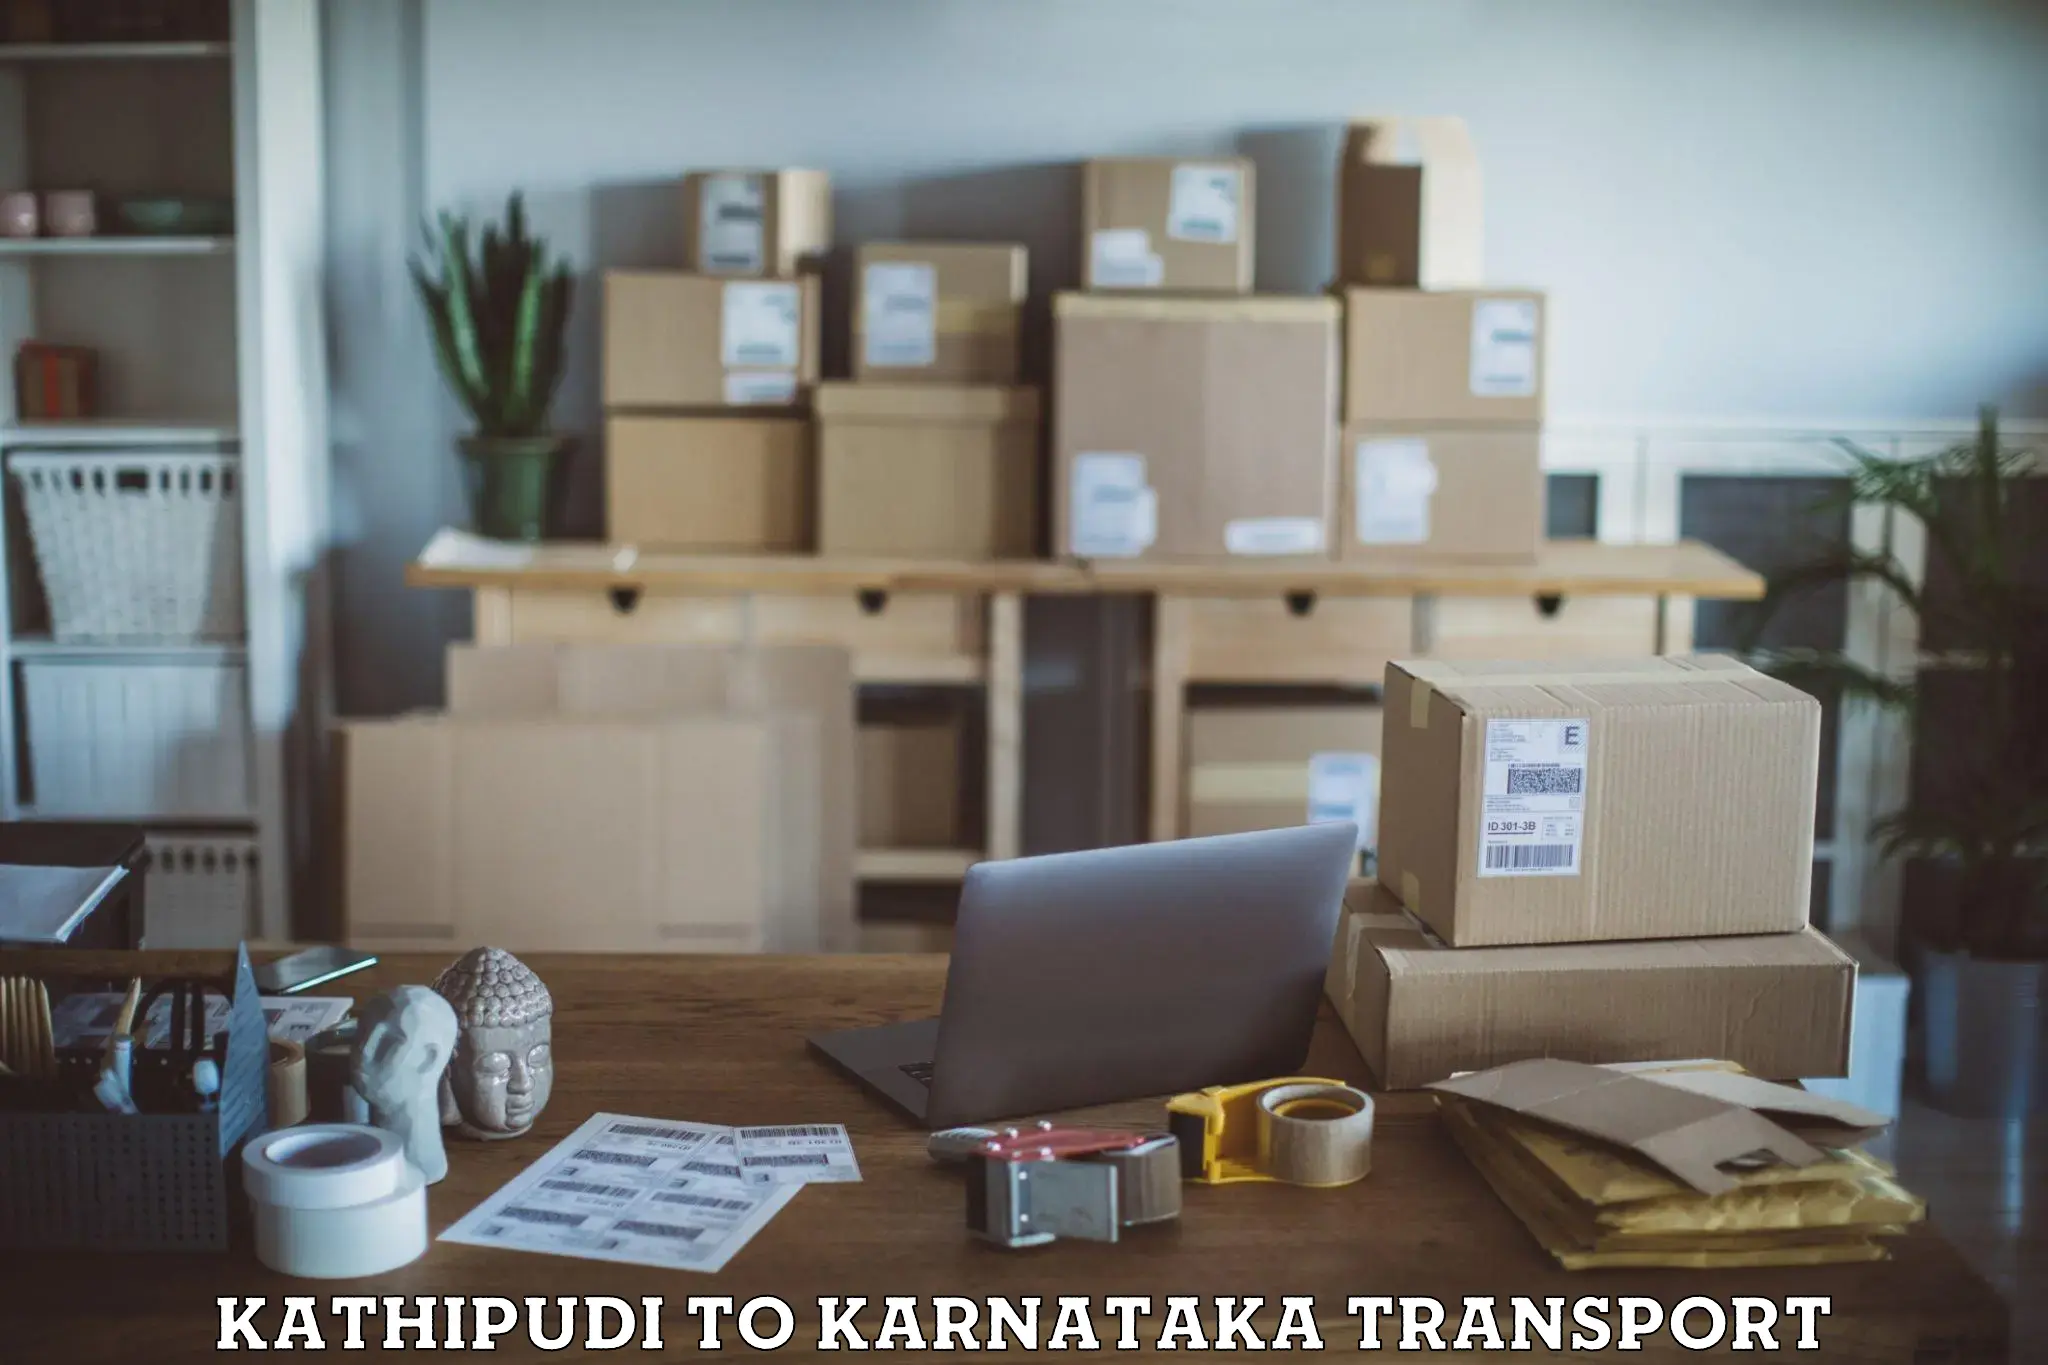 Land transport services Kathipudi to Hospet